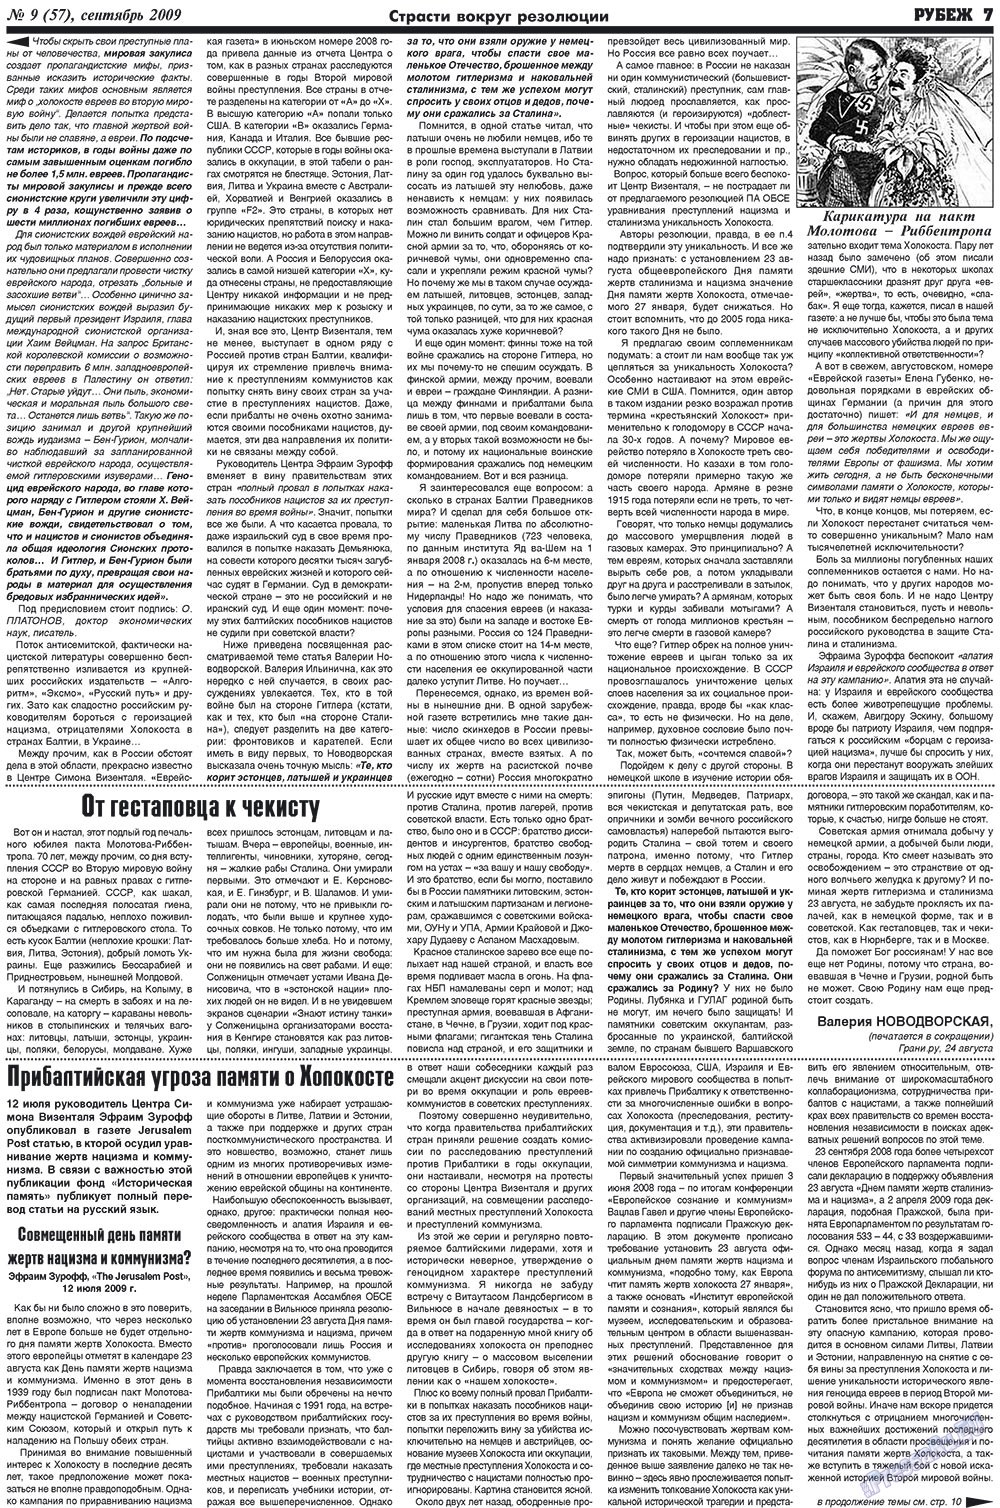 Рубеж (газета). 2009 год, номер 9, стр. 7